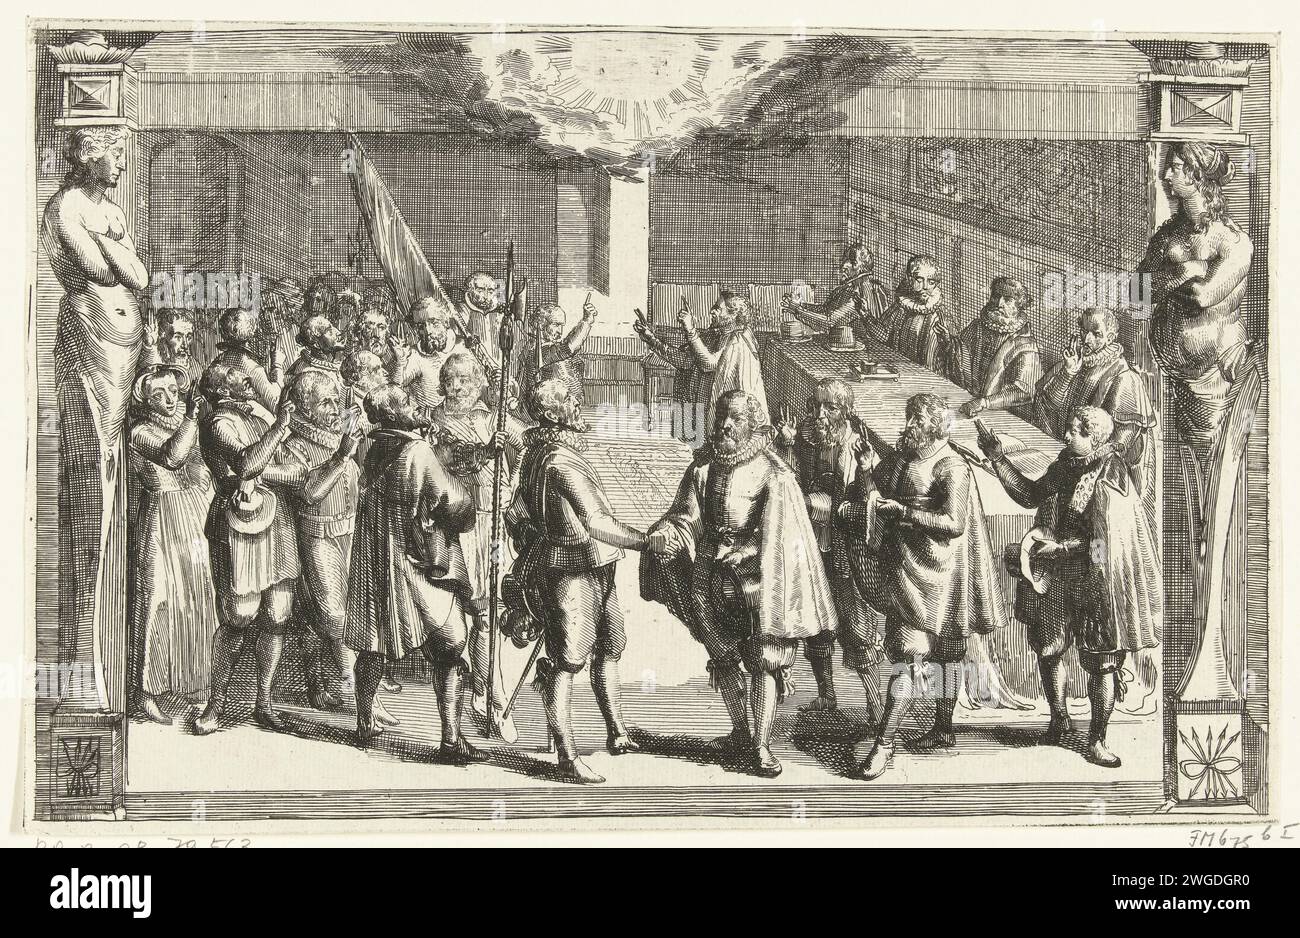 Den Eid der Treue ablegen, 1574, 1614 - 1699 Ablegen des Eid der Treue während der Belagerung von Leiden, 1574. Innenraum mit einer Gruppe leidener Männer und Frauen, die treu auf den Prinzen von Orange schwören. Eine Wolke oben. In einem Gestell mit Hermen auf beiden Seiten. Nordholland Papierätzung / Gravur schwören einen Eid (mit zwei gehoben Fingern) Stockfoto